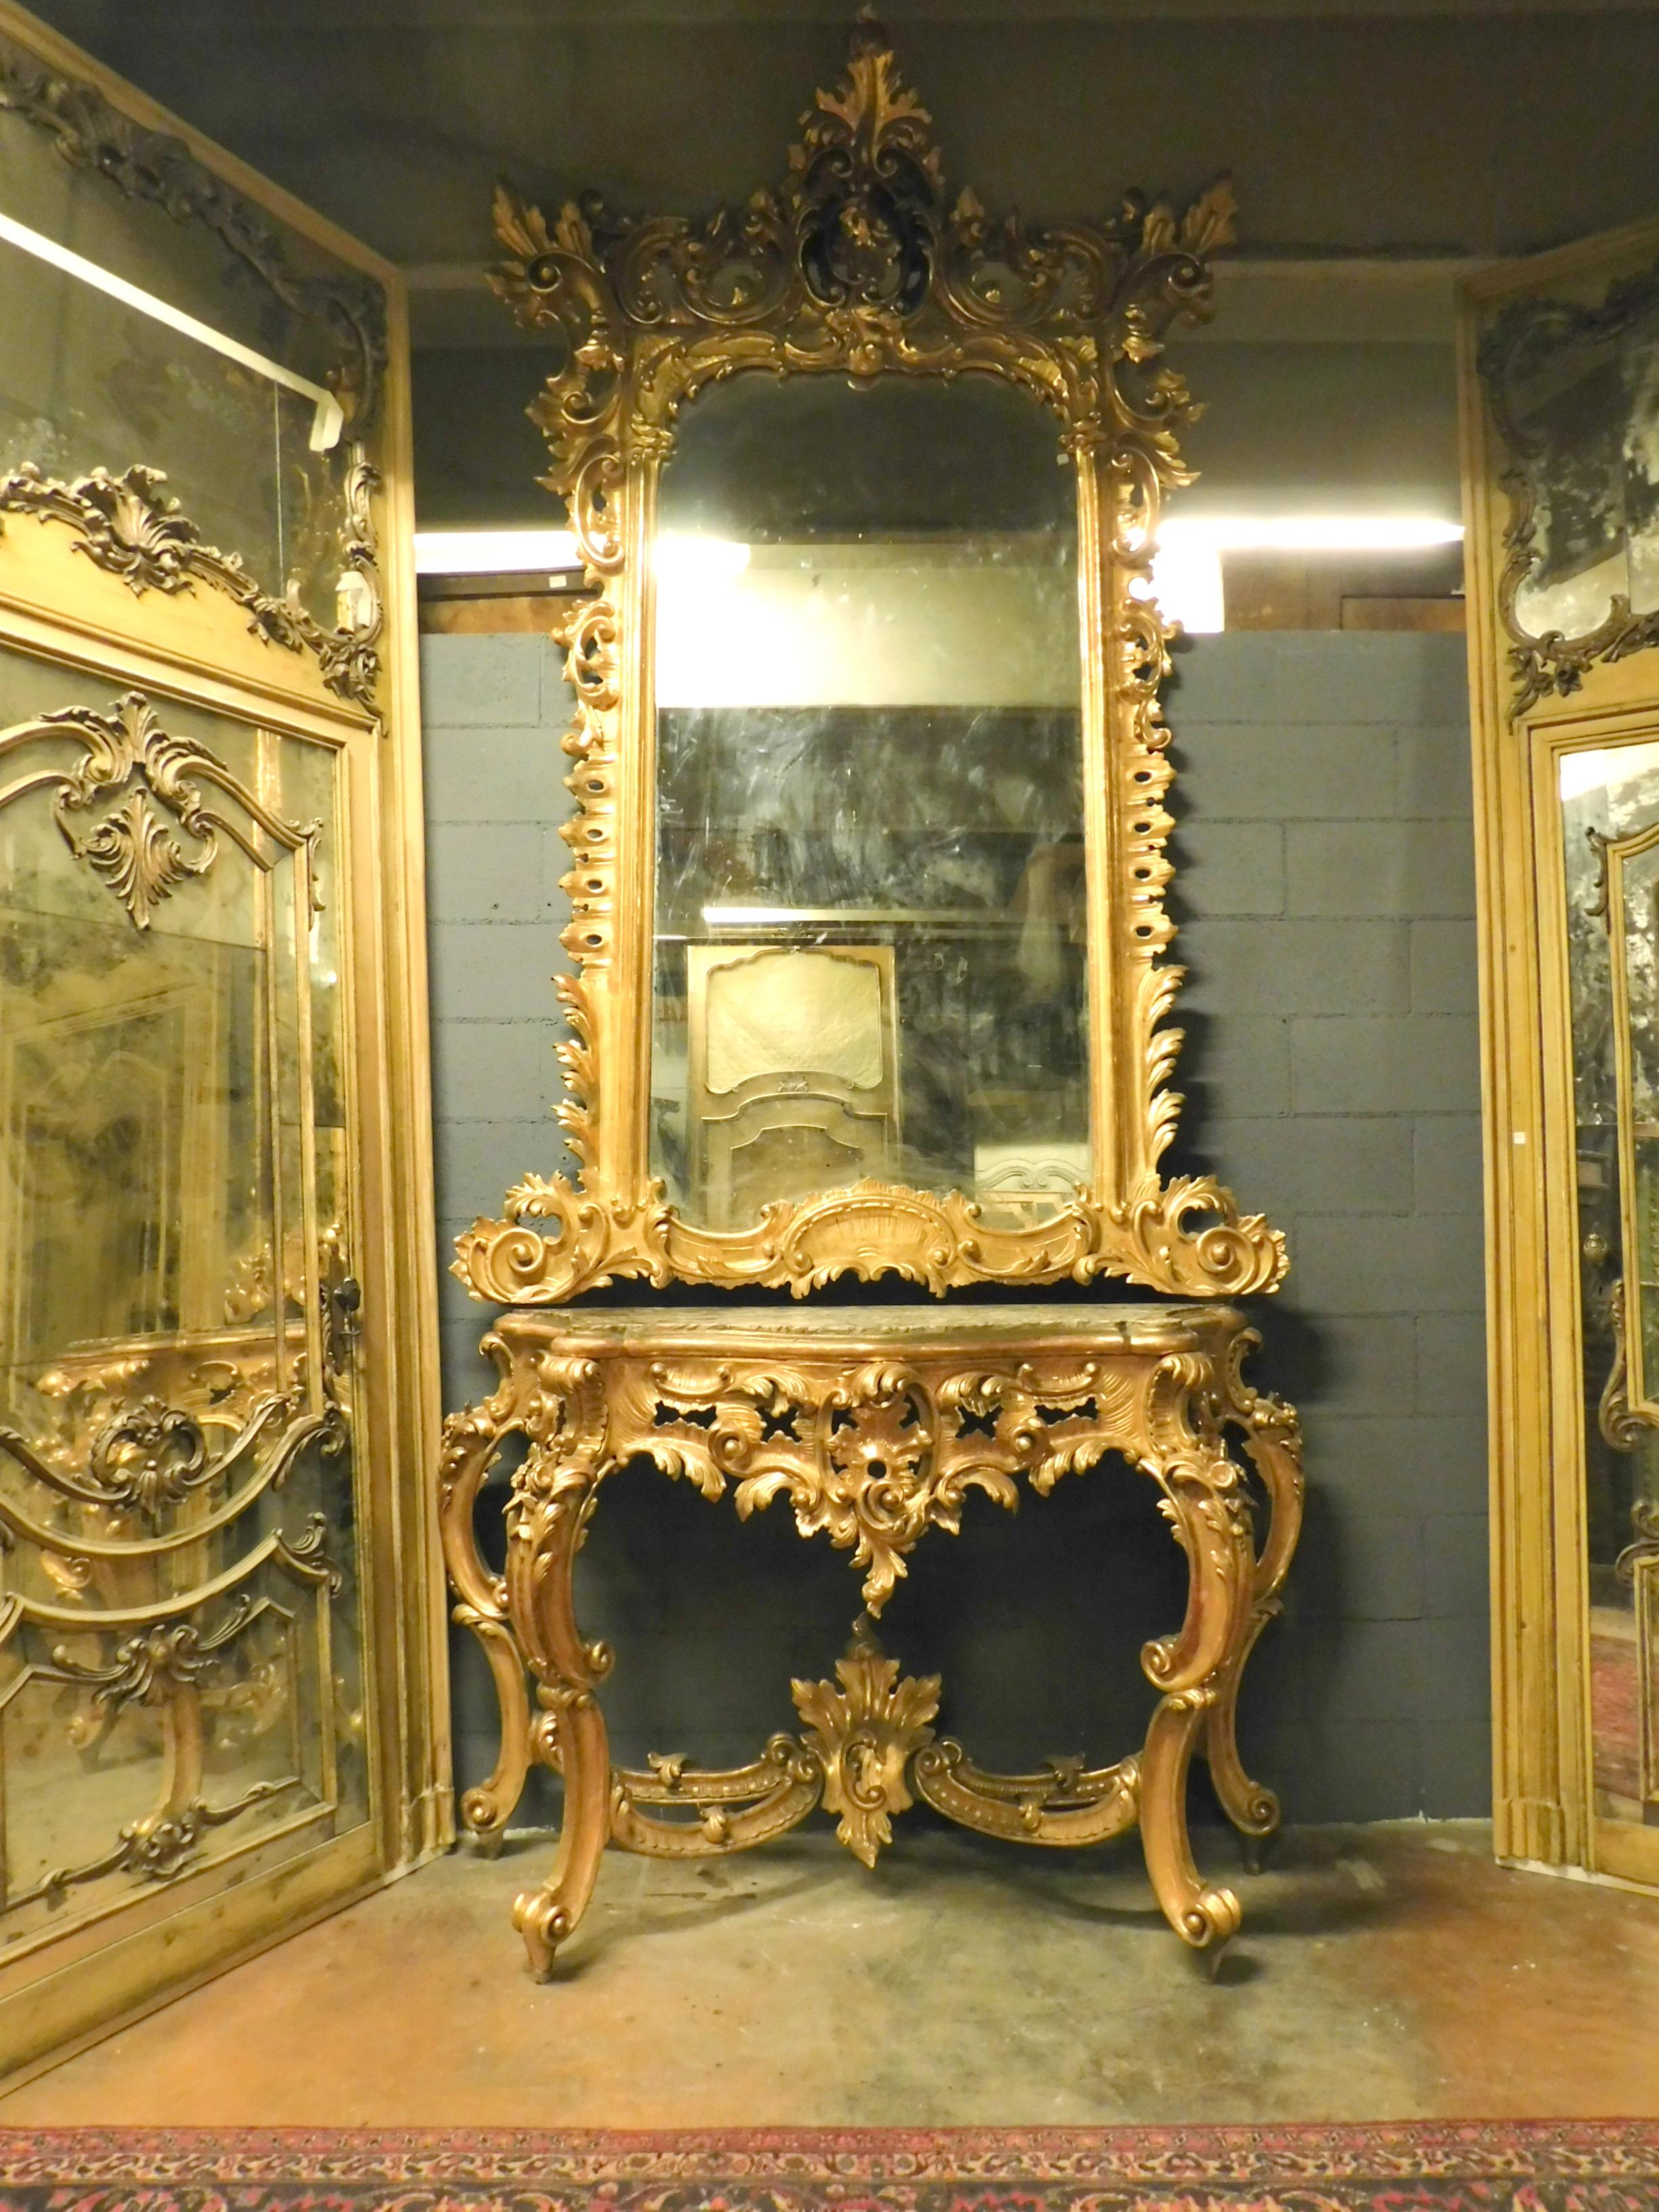 Ancienne et importante console dorée, composée d'un miroir en bois doré, avec de très riches sculptures, et d'un plateau de console en marbre avec des pieds sculptés et dorés. Provenant d'un important bâtiment historique de Naples (Italie),